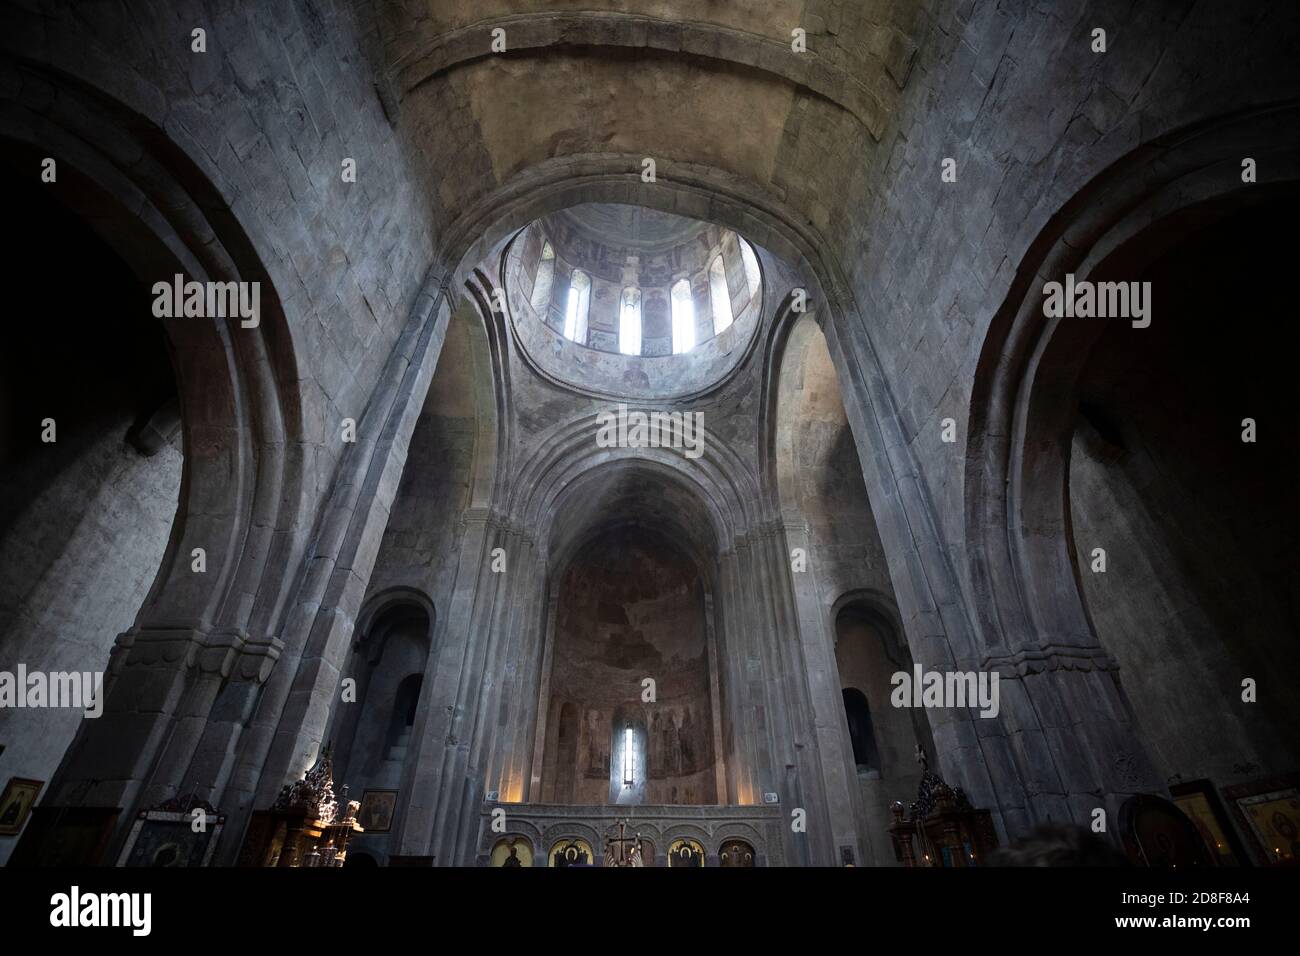 Himmlisches Licht ergießt sich durch die Kuppel der mittelalterlichen Samtawro-Kirche in Mzcheta, Georgien, Kaukasus, Osteuropa. Stockfoto